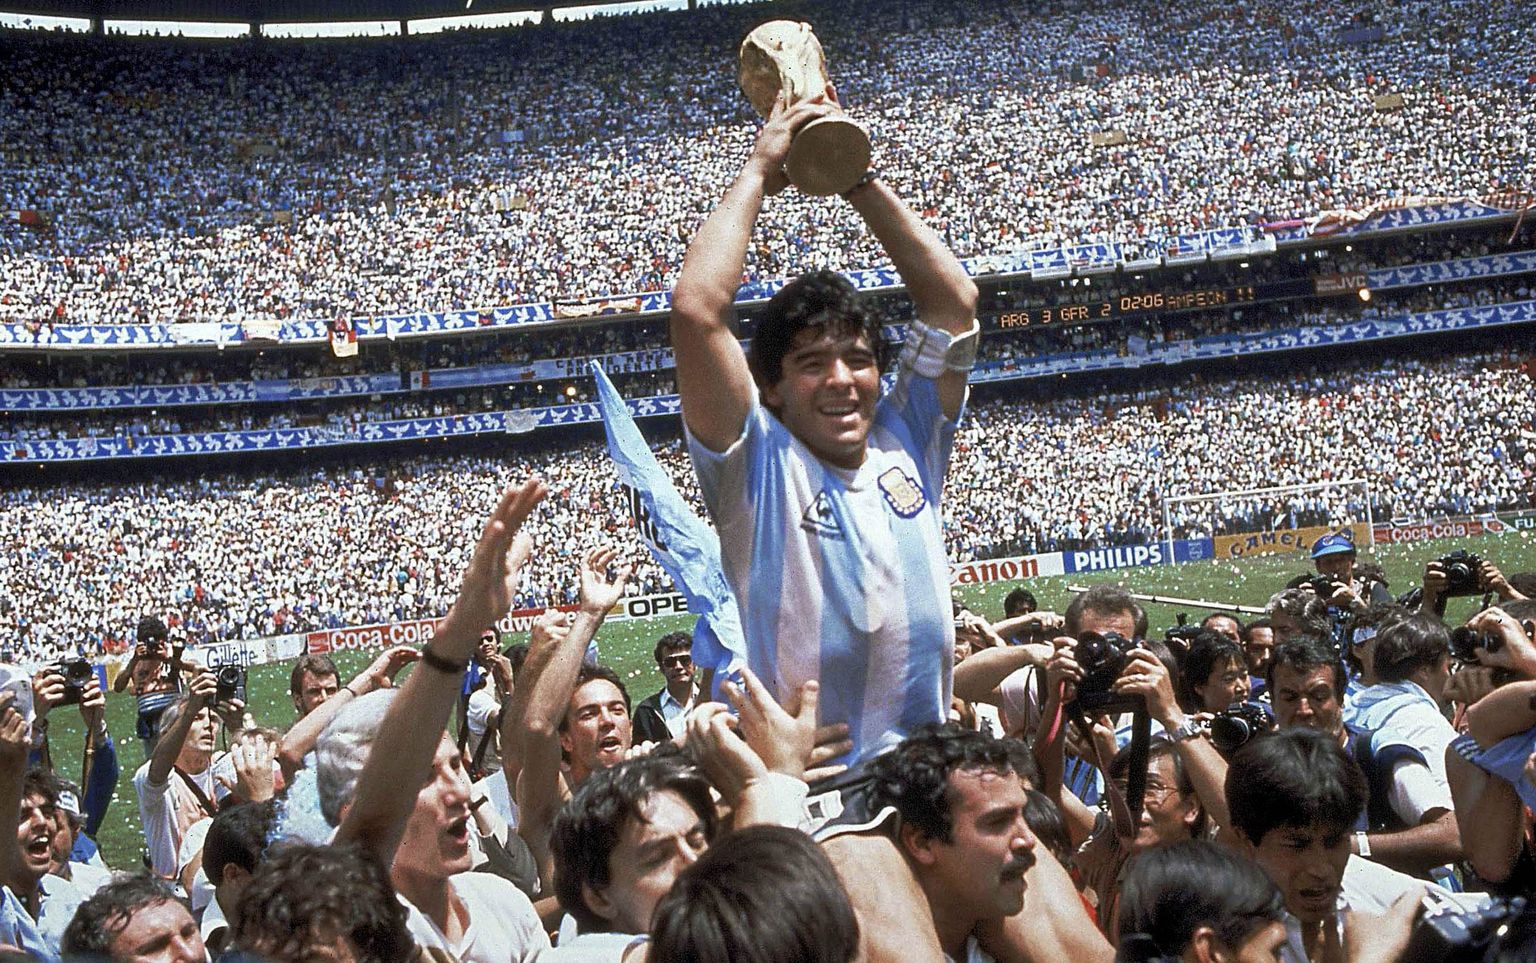 Djego Maradona ar Pasaules kausa trofeju 1986. gadā Mehiko. Toreiz Argentīna finālā ar 3:2 pieveica Vācijas Federatīvo republiku (VFR). Maradona tika nosaukts par turnīra labāko spēlētāju.